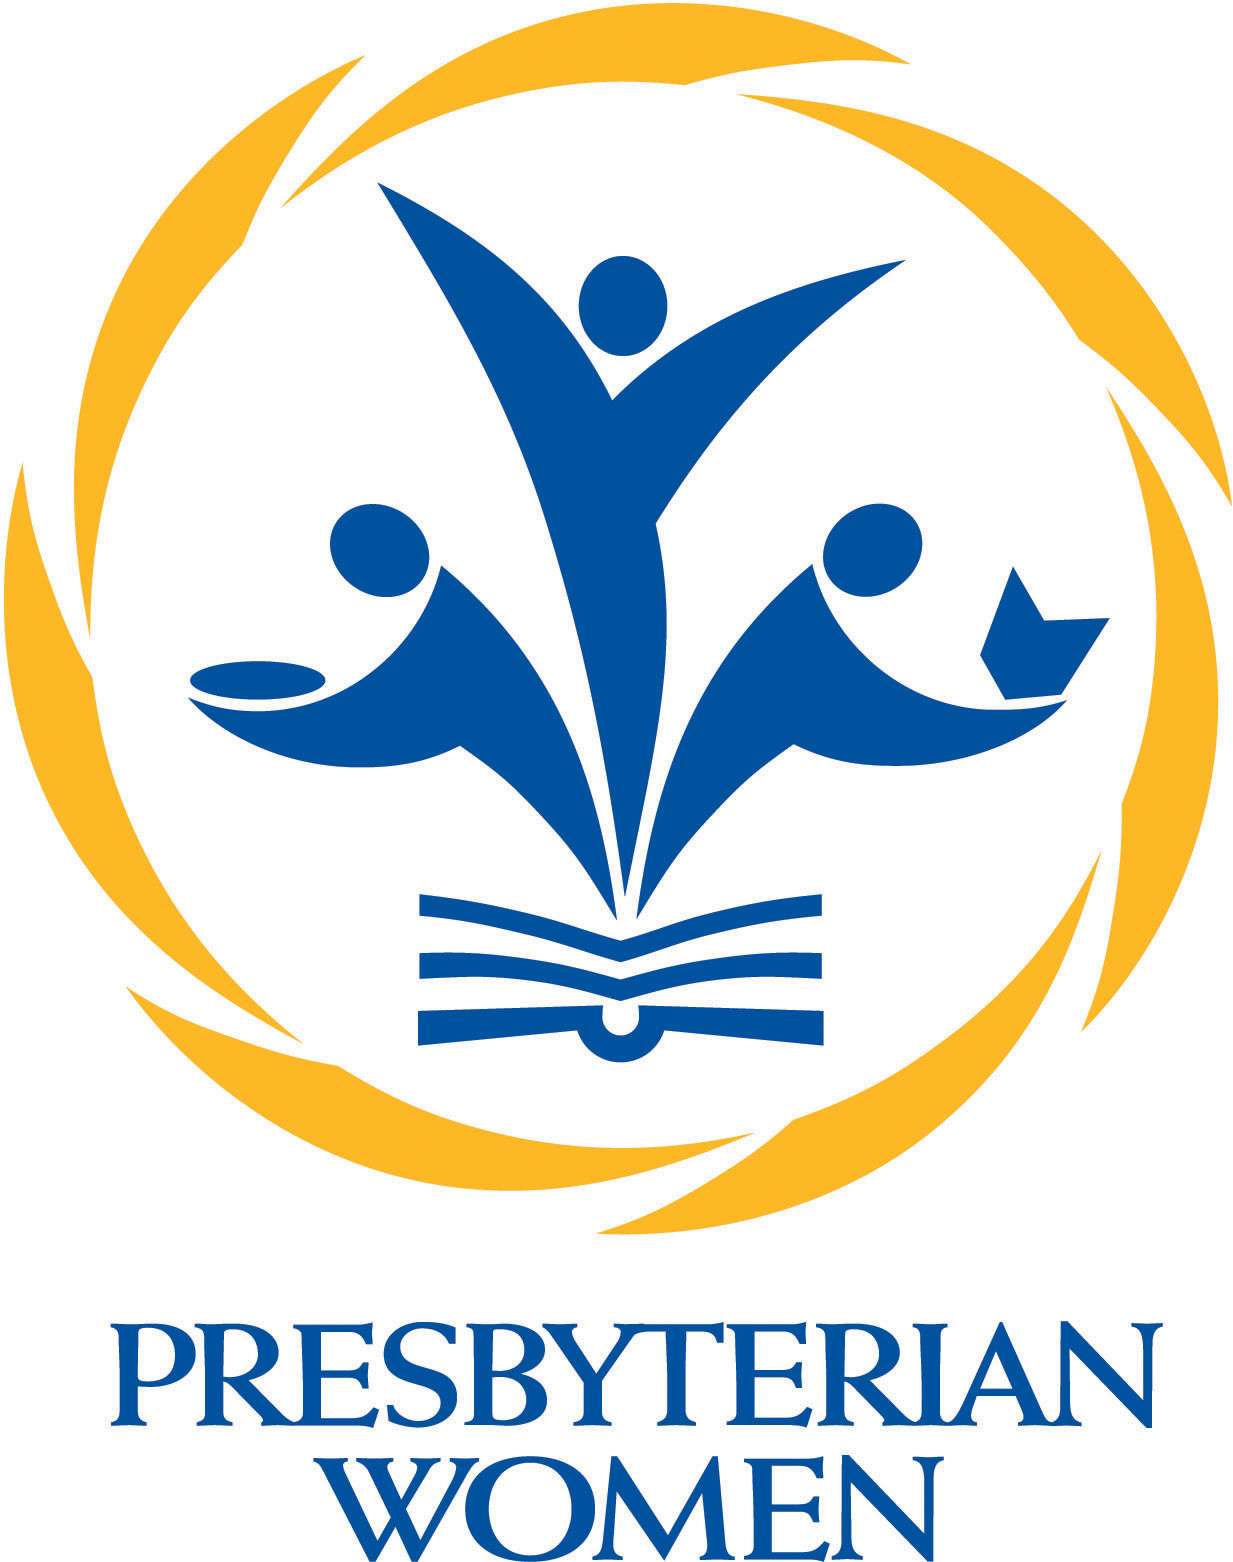 https://www.presbyterianwomen.org/wp-content/uploads/2016/11/logo_pw_4c.jpg